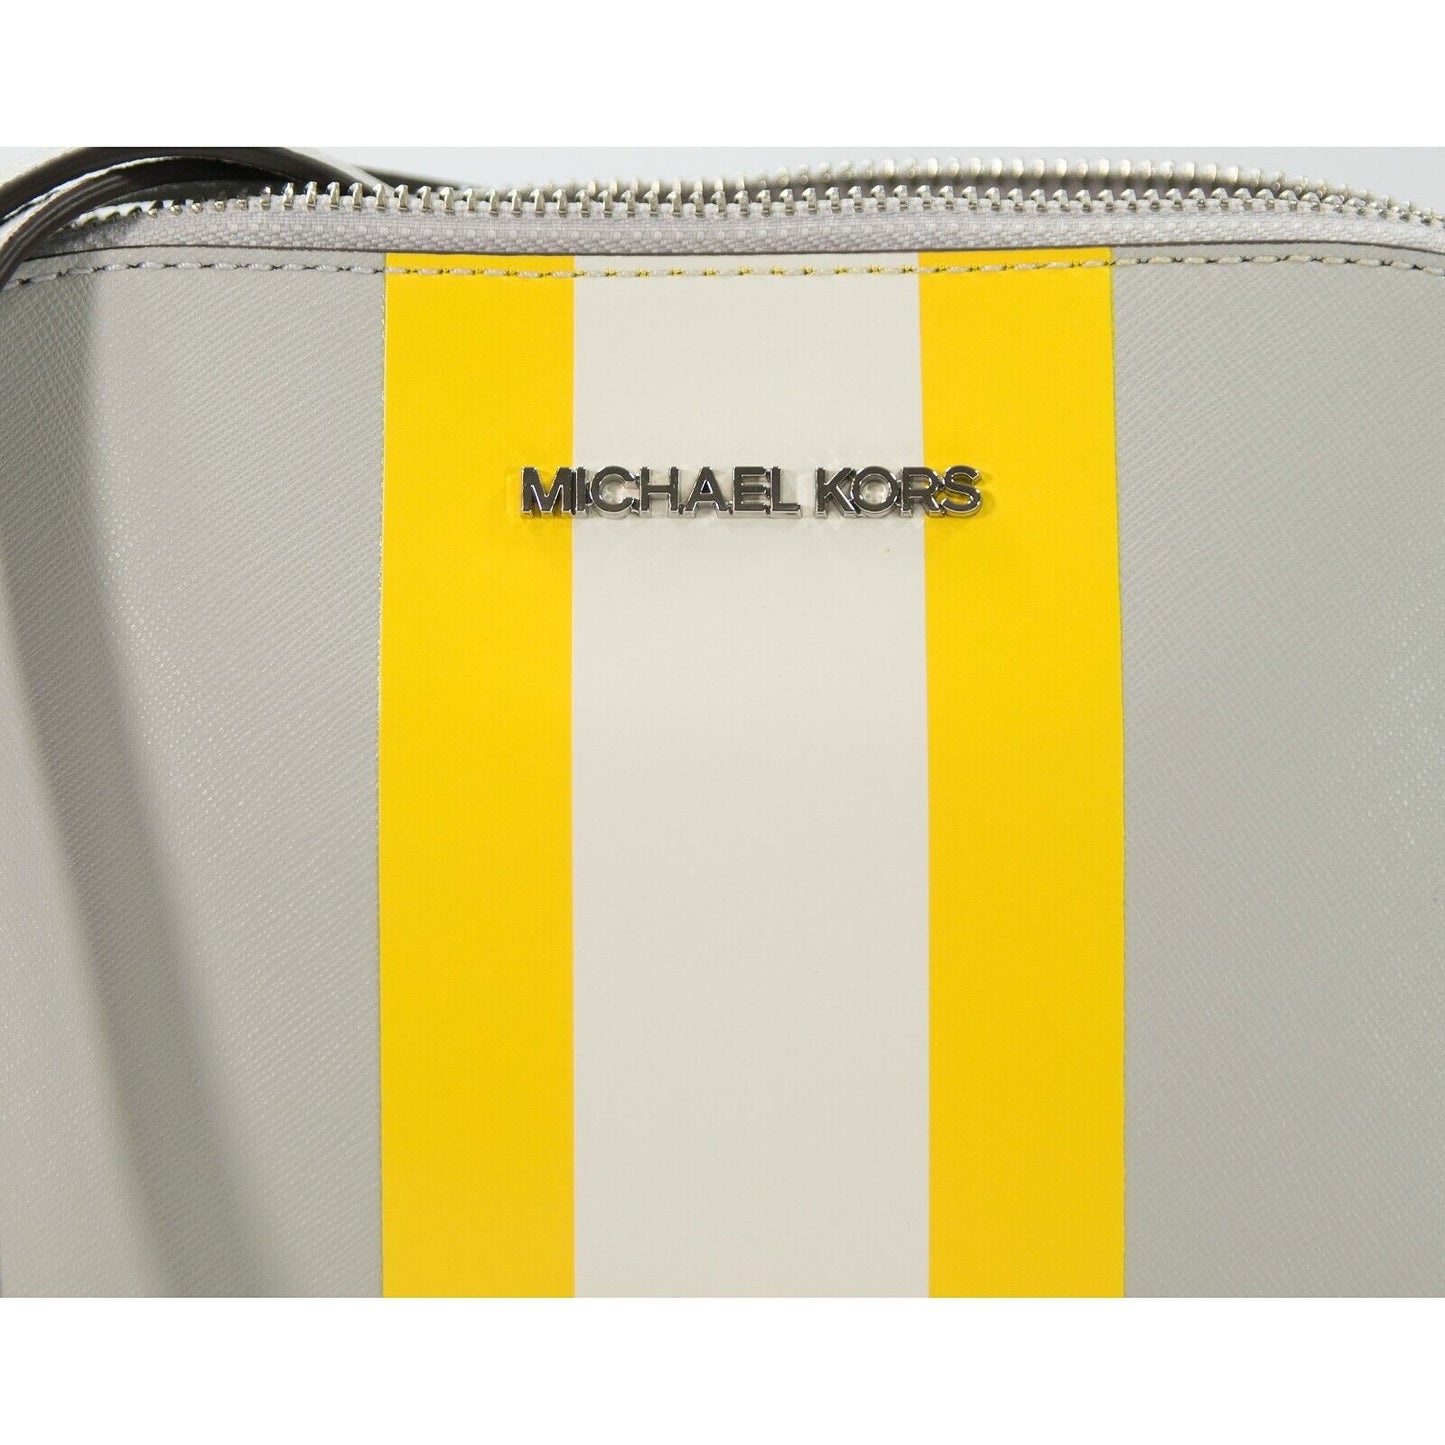 Michael Kors, Bags, Nwt Michael Kors Leather Cindy Dome Crossbody Bag